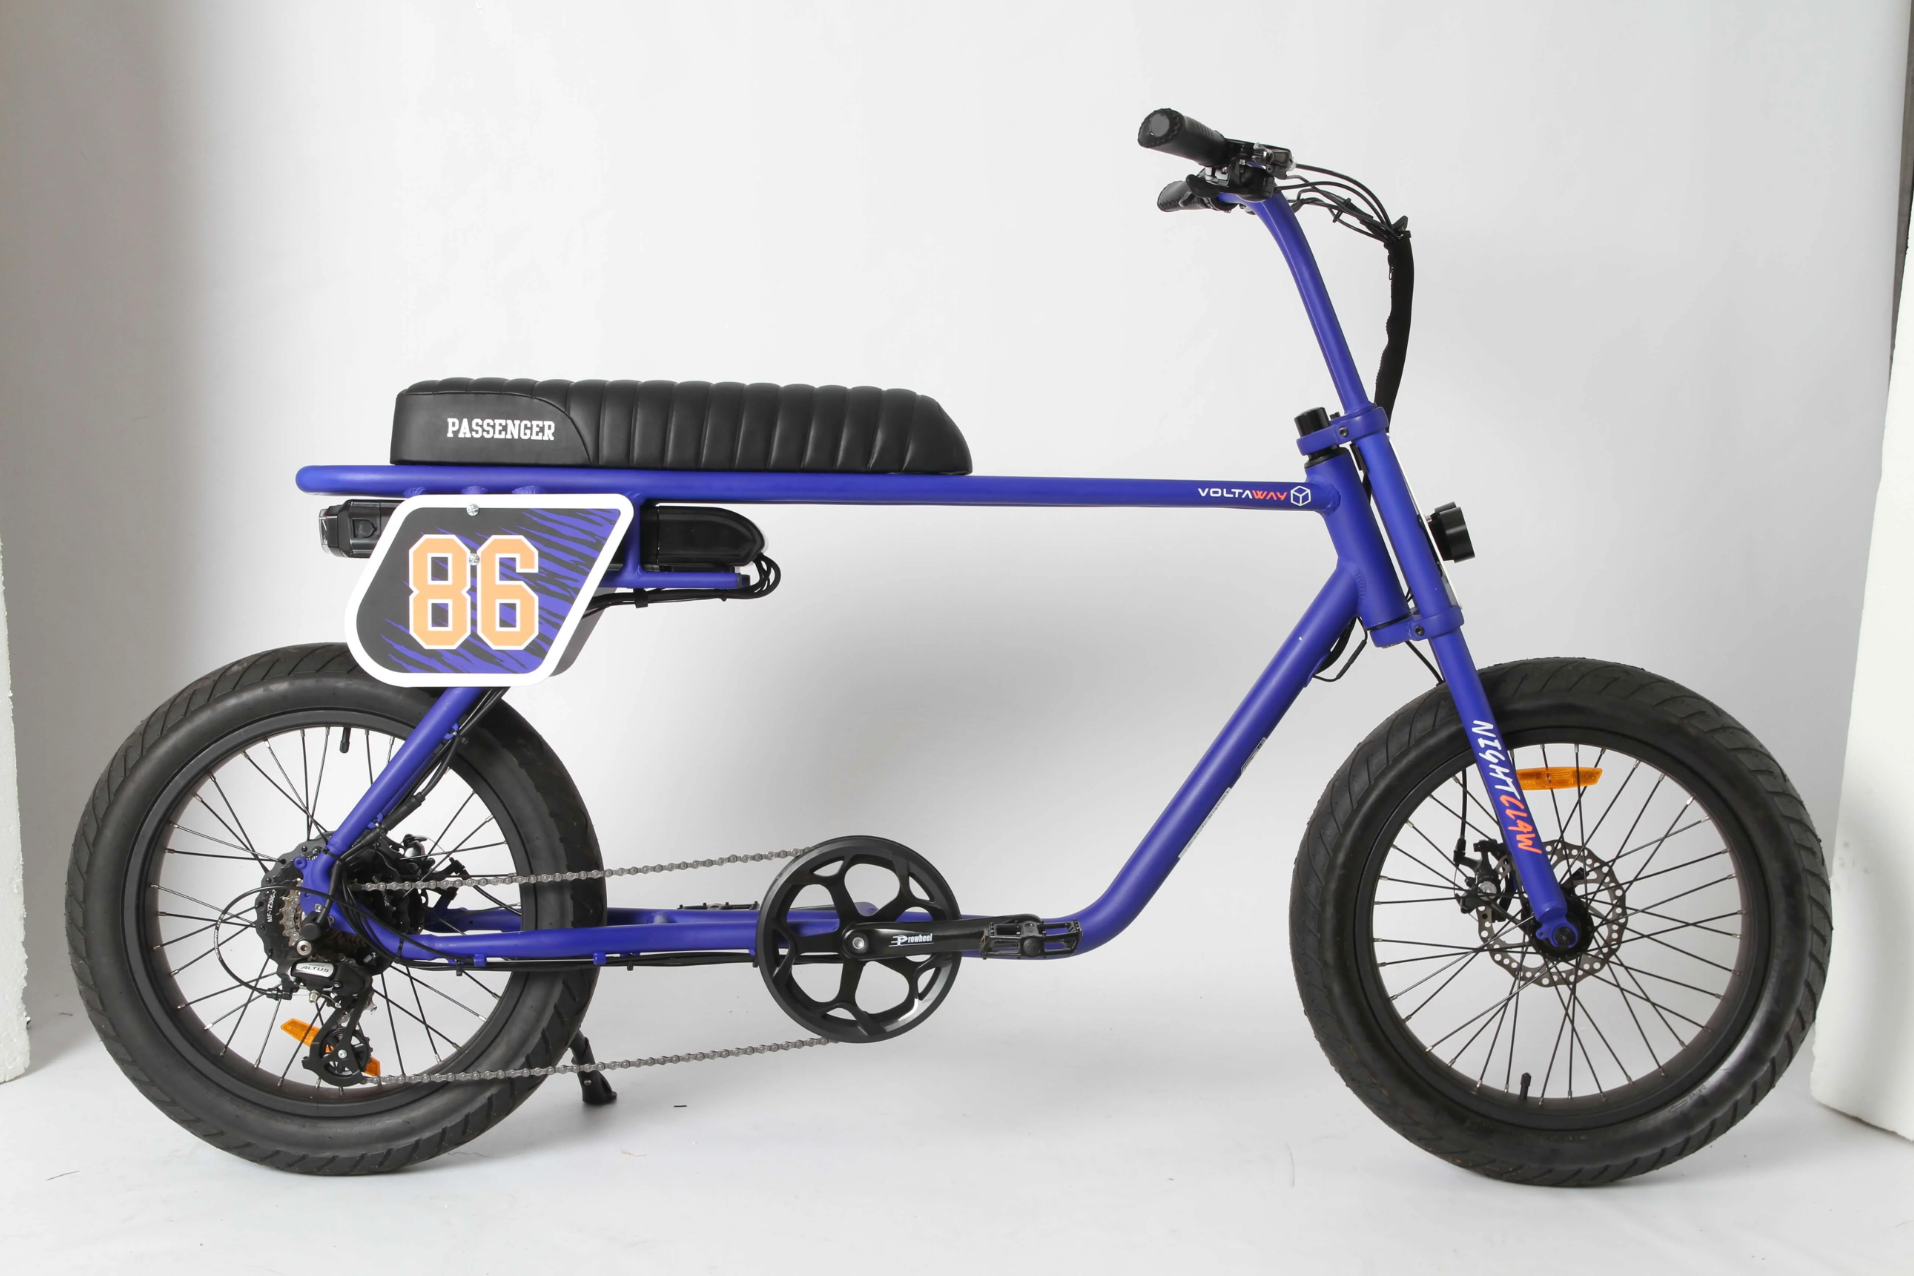 Paarse-fatbike-genaamd-Voltaway-passenger,-met-gestroomlijnd-ontwerp-en-sportieve eigenschappen,-gefotografeerd-vanaf-de-zijkant